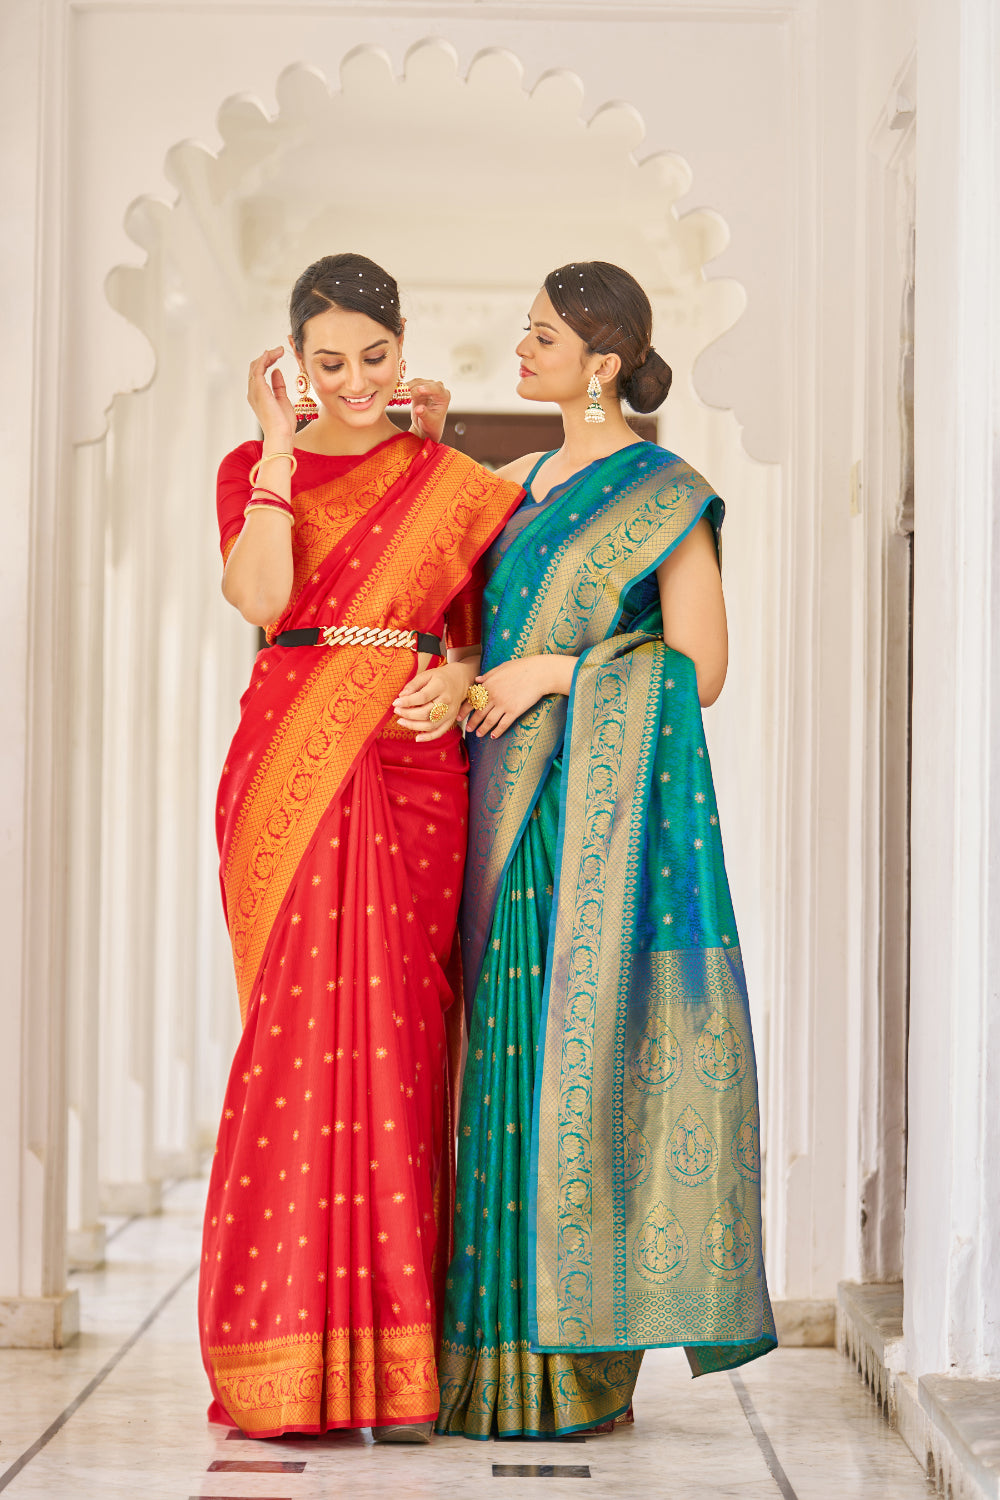 Beautiful Hot Red Banarasi Silk Saree With Zari Weaving